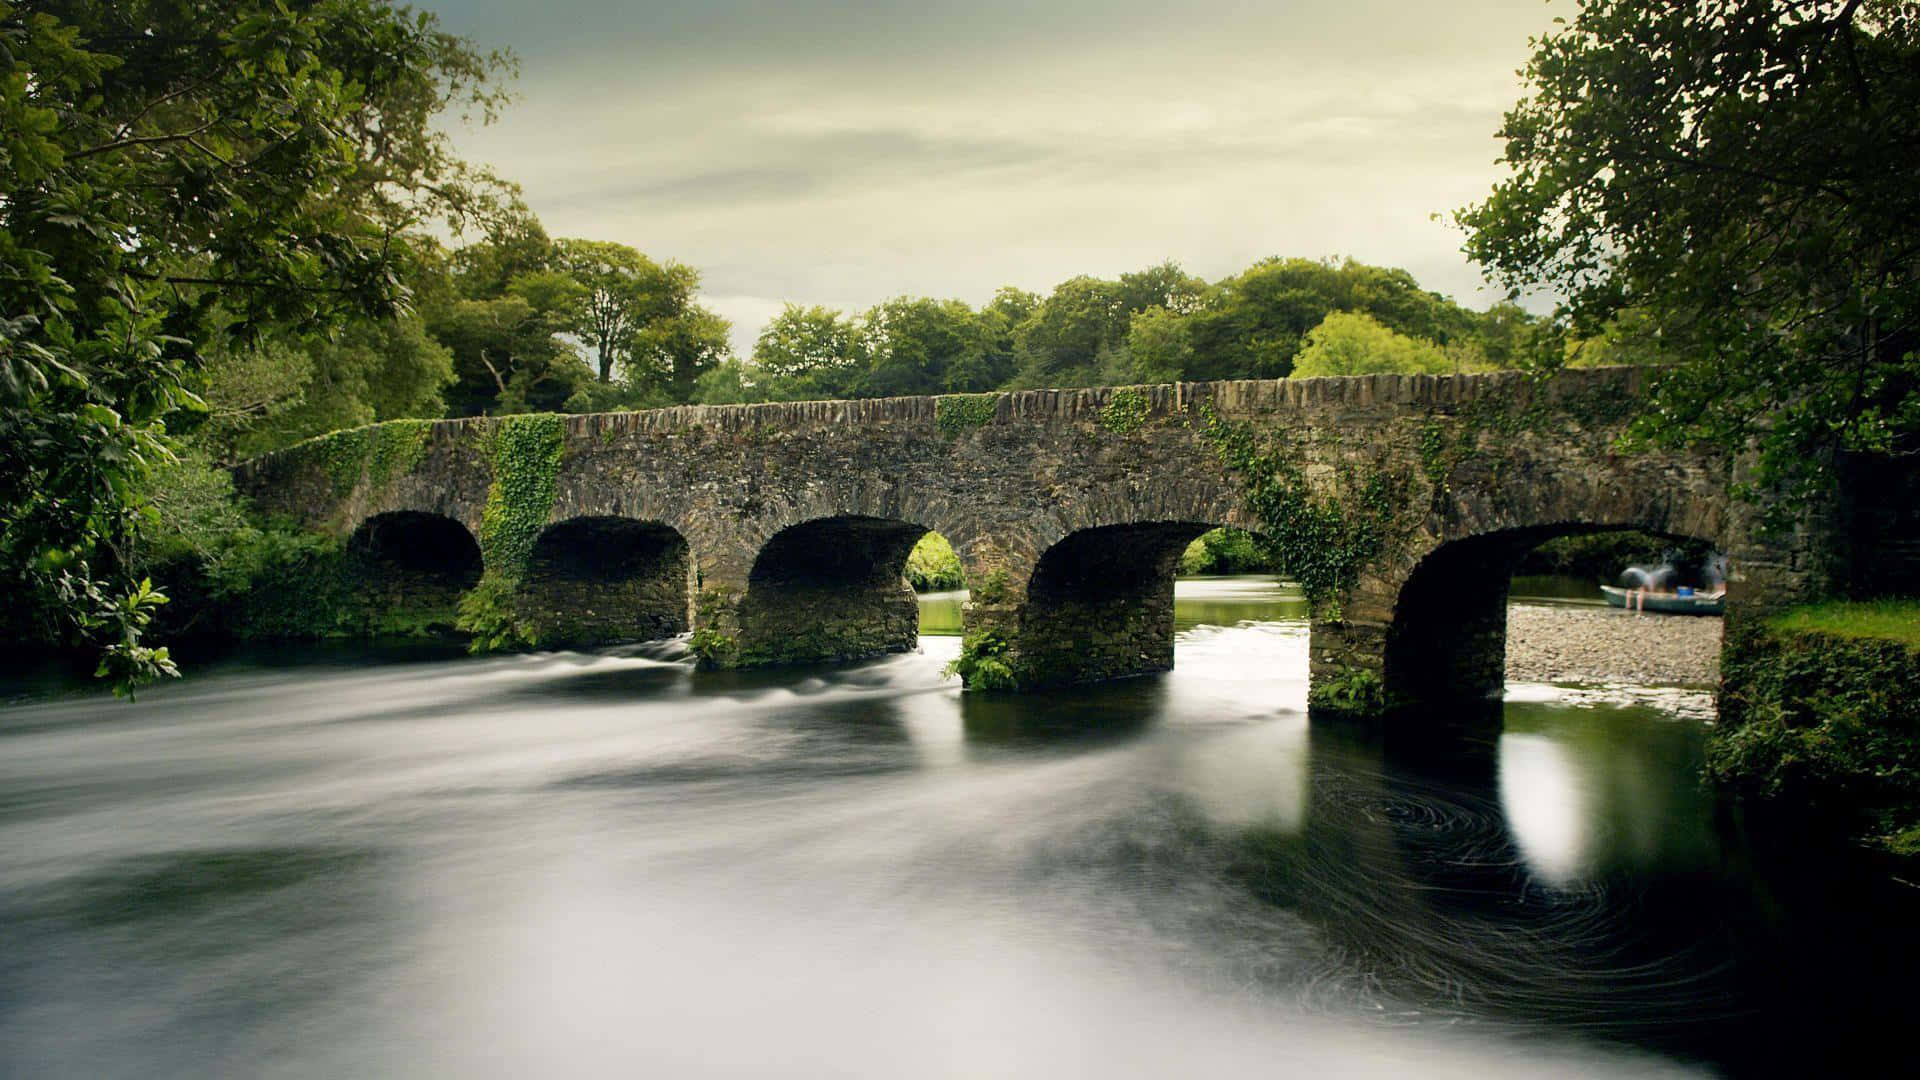 Stunning Scenery of Irish Countryside